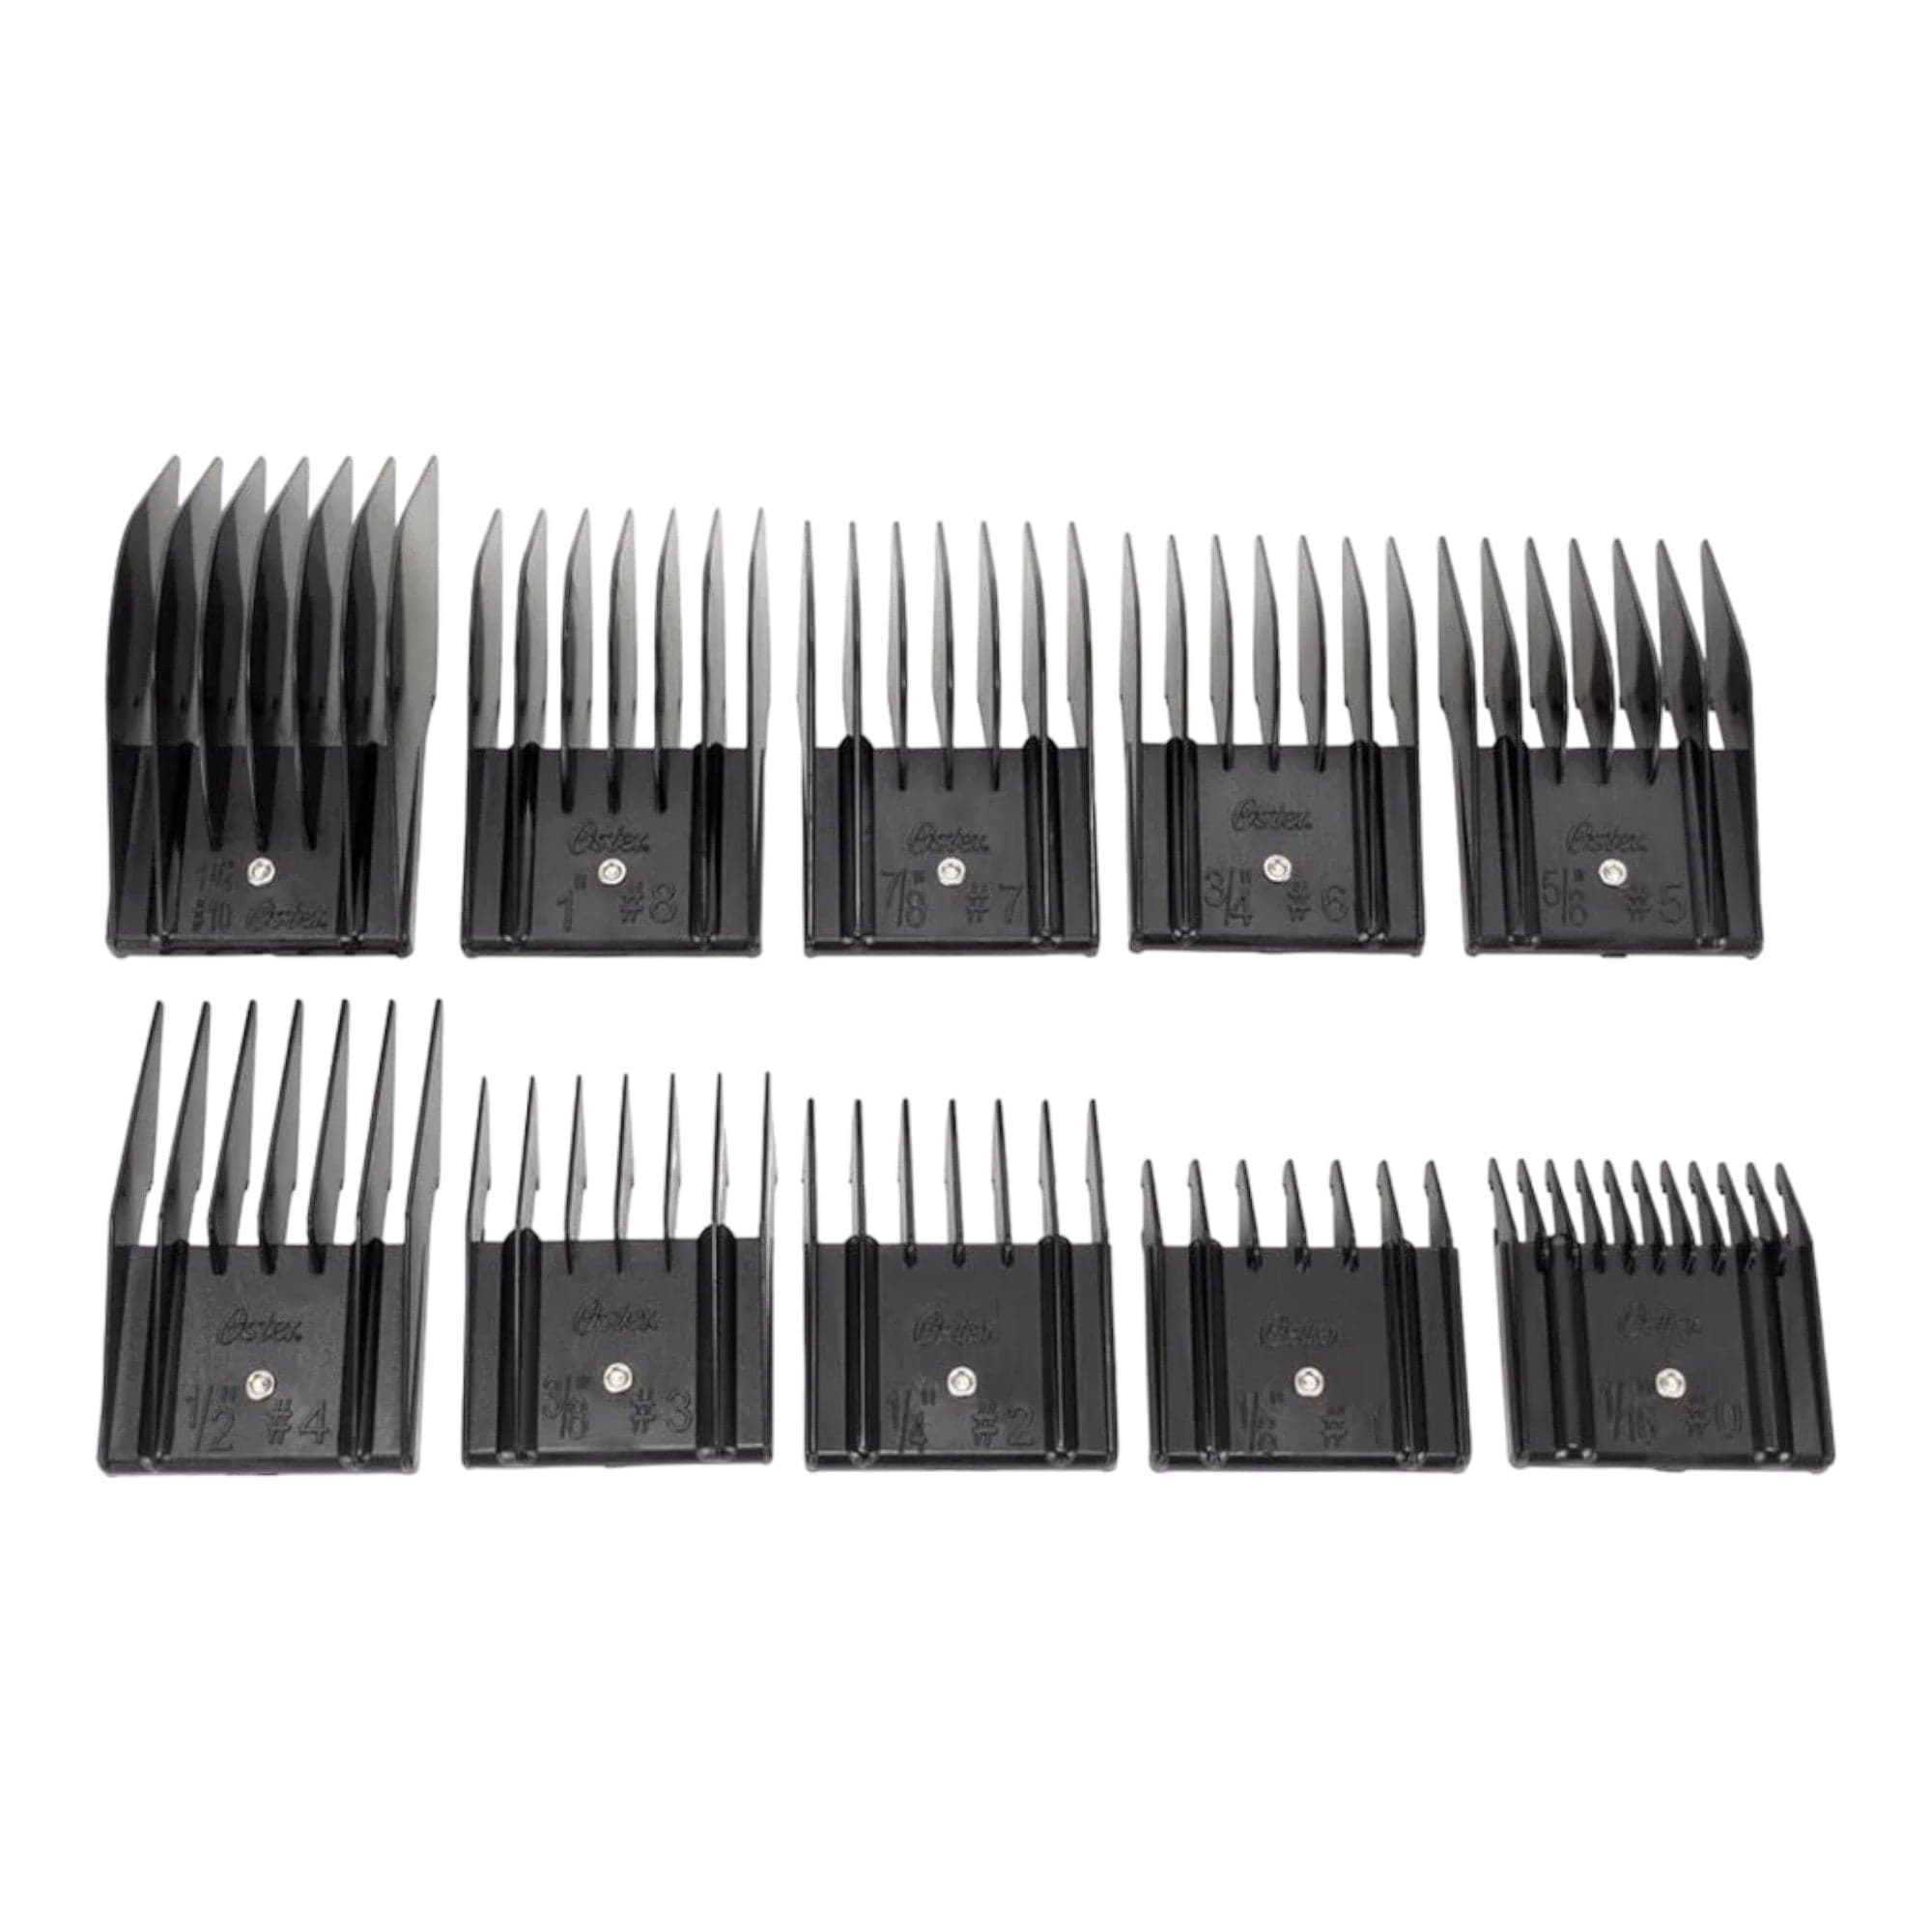 Oster - Universal Comb Pouch Guards Set 10pcs